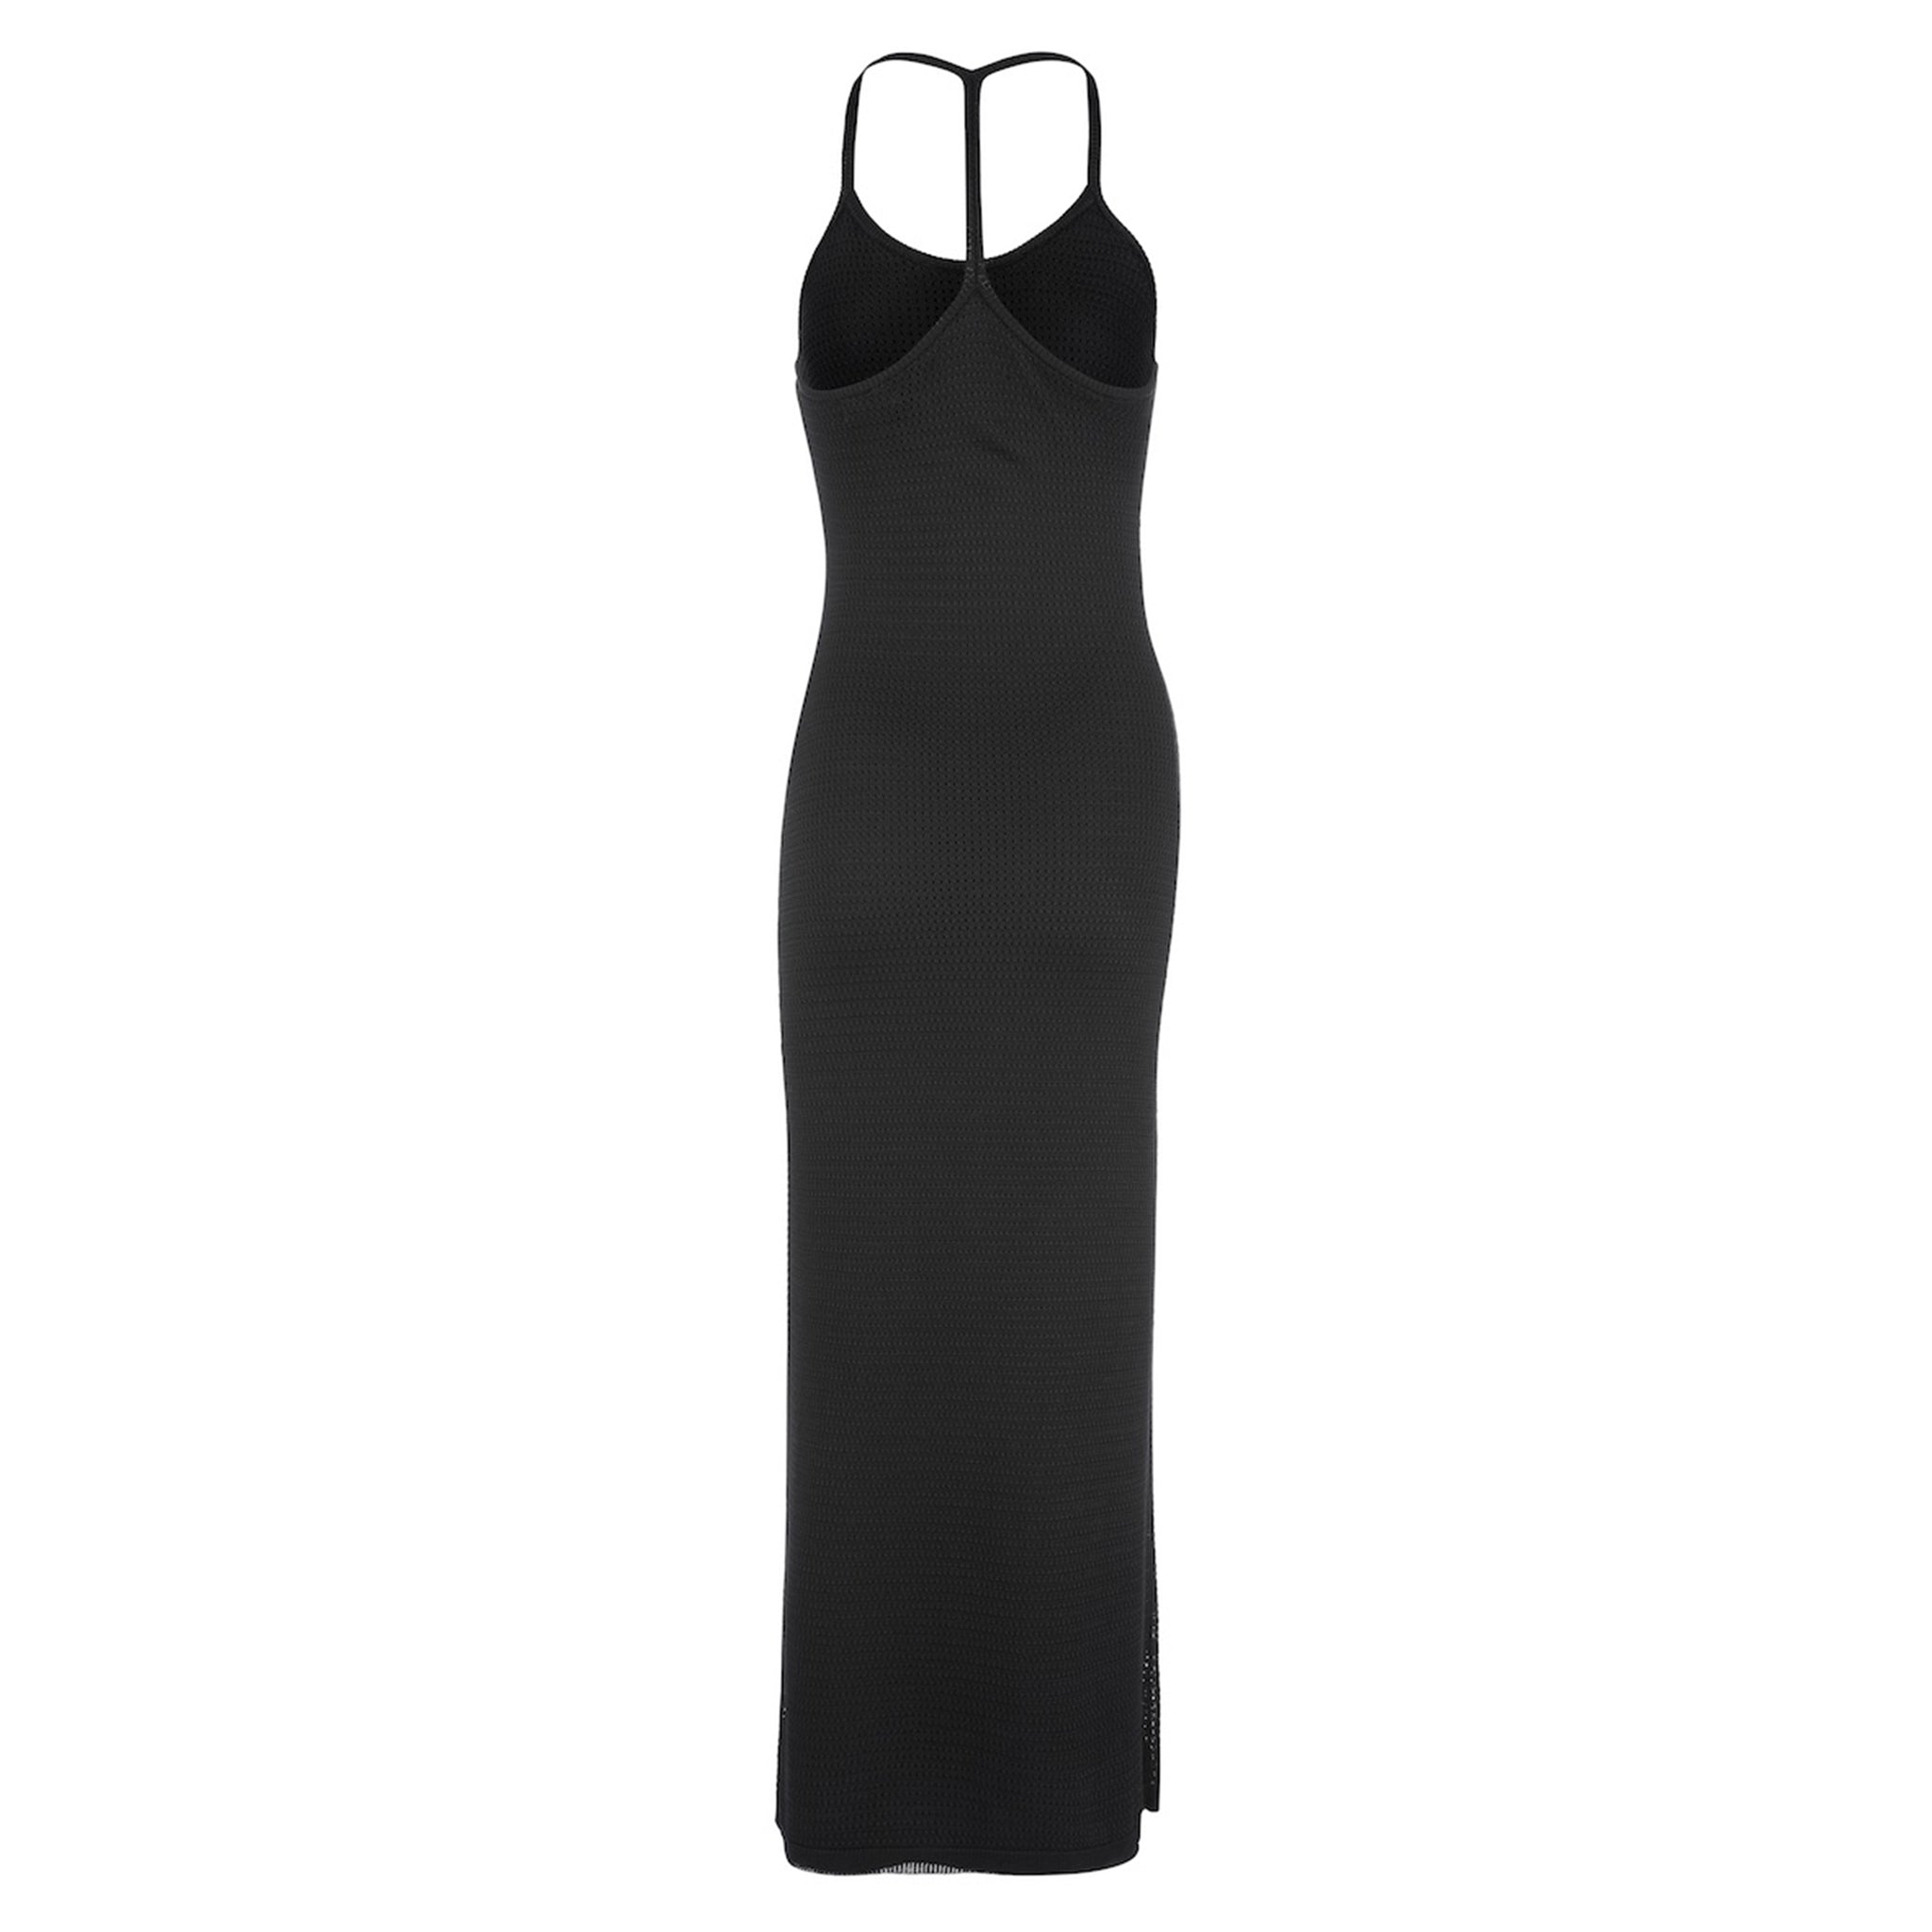 Netting Racer Dress - Black